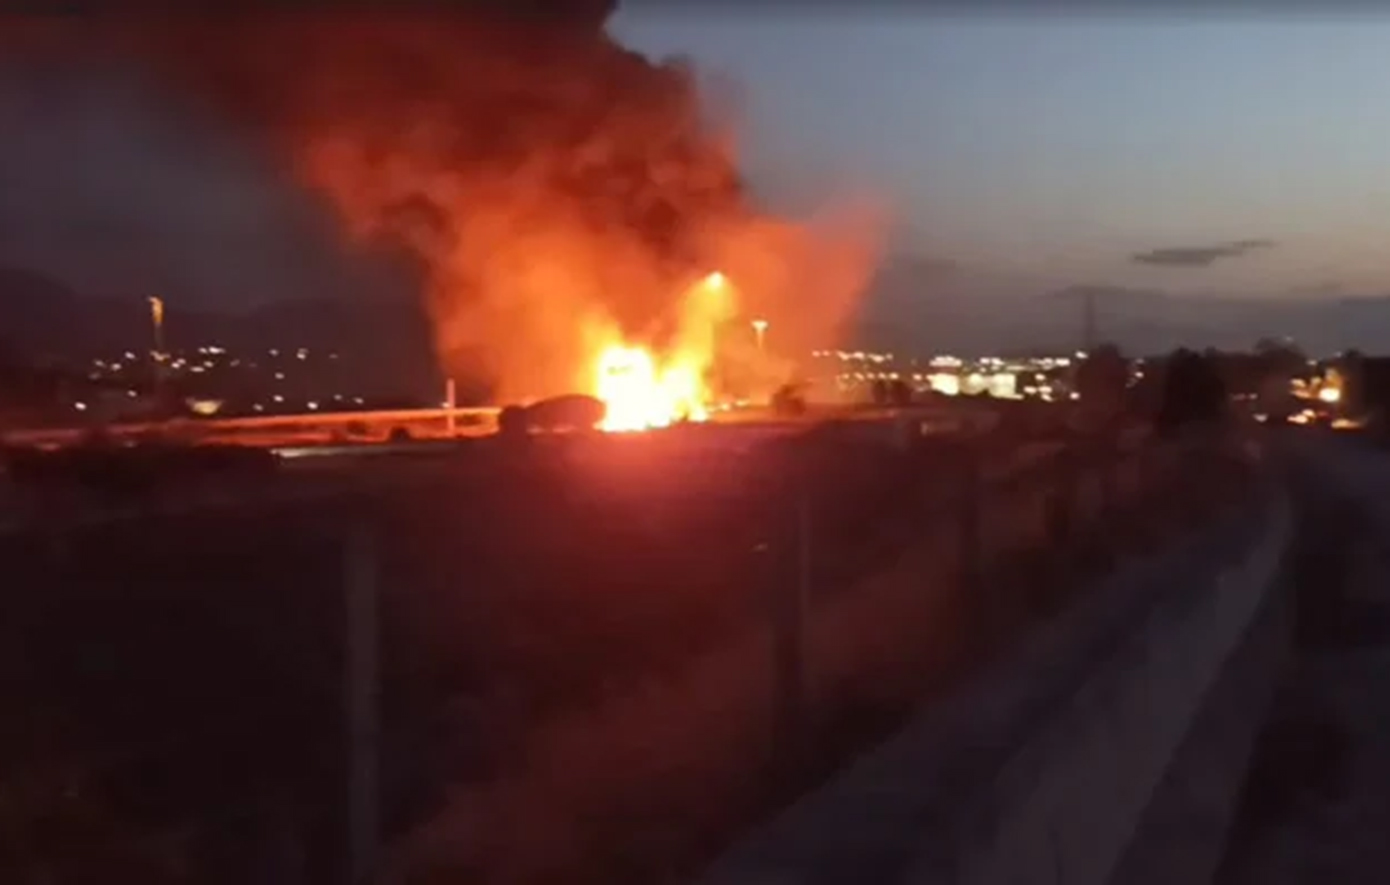 Χάος στην Αθηνών – Κορίνθου από τη φωτιά μετά την ανατροπή βυτιοφόρου, κλειστά και τα δύο ρεύματα και ουρές χιλιομέτρων